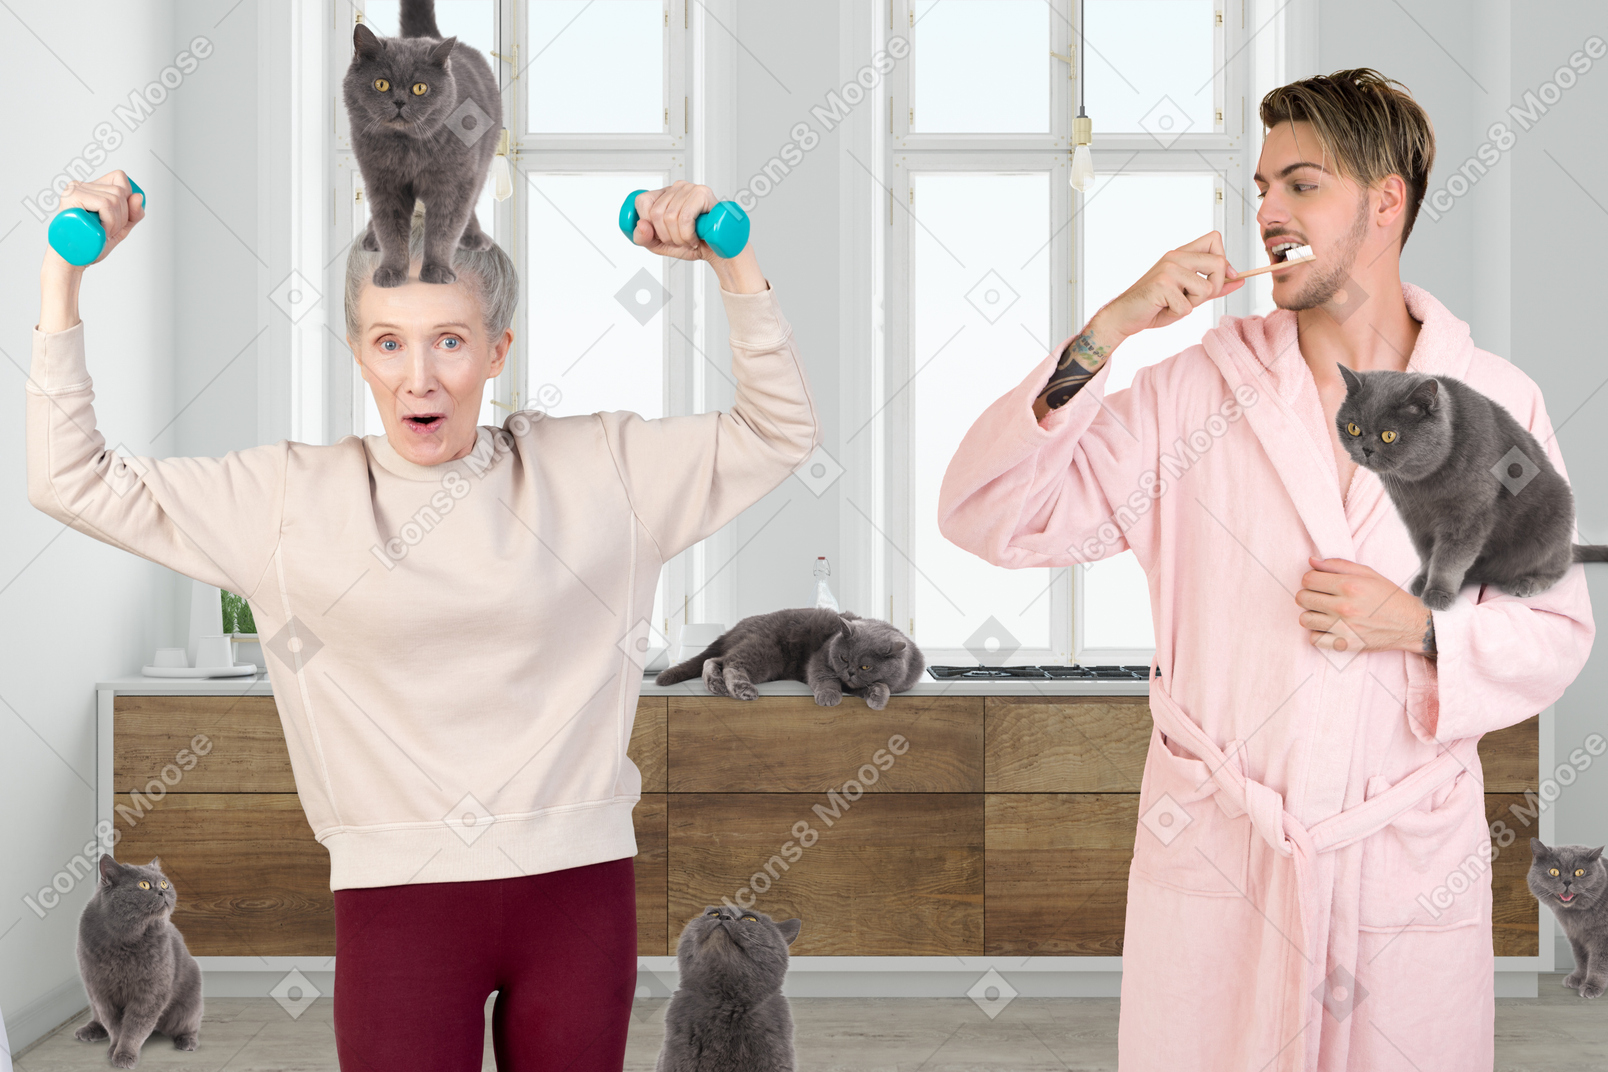 L'uomo si lava i denti e sua madre si esercita accanto a lui circondata da gatti